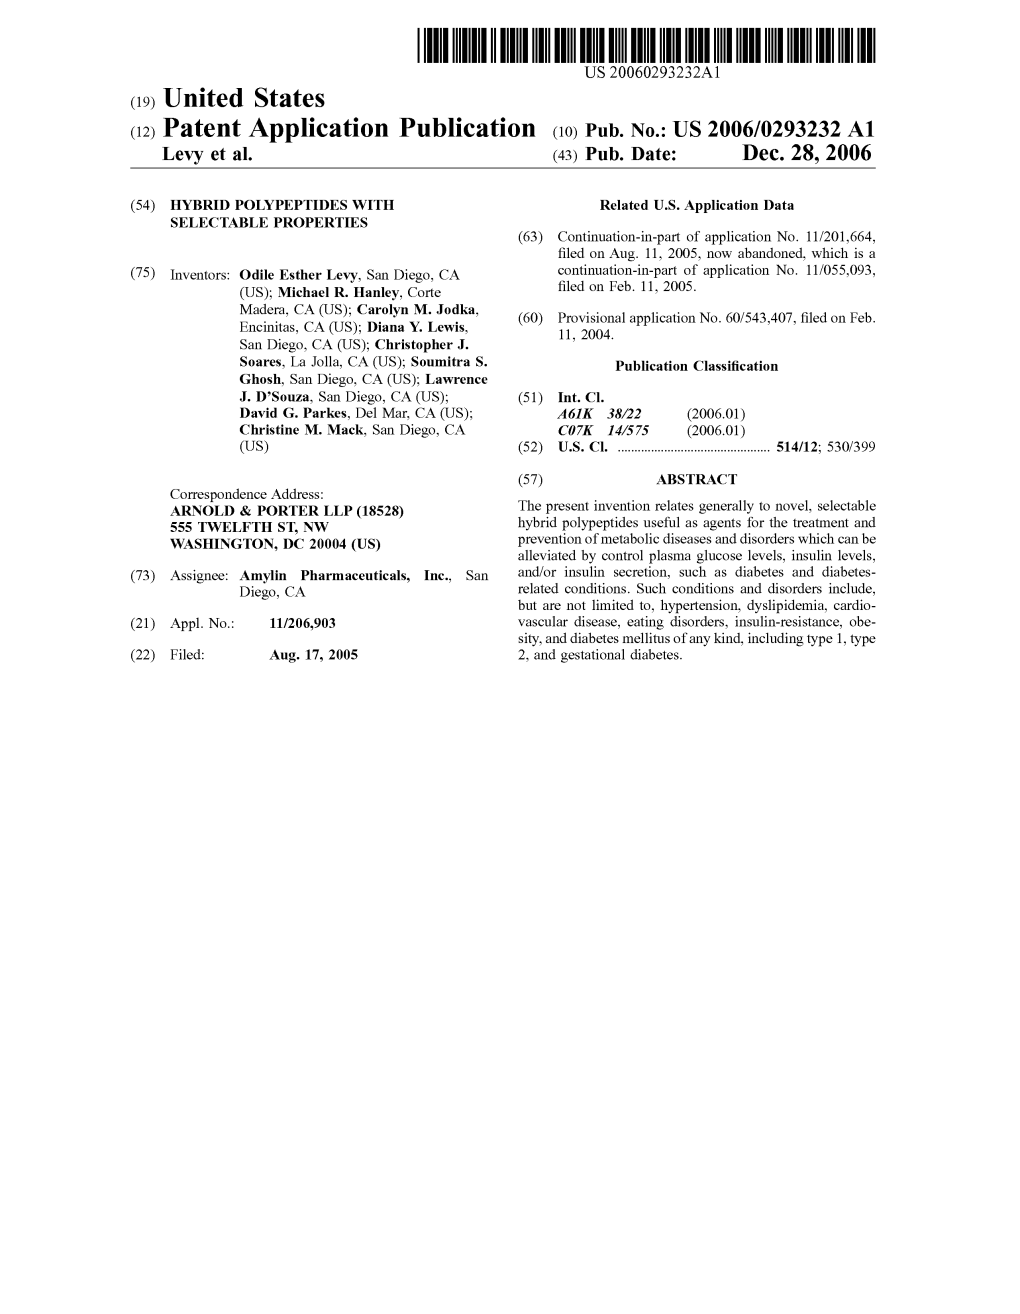 (12) Patent Application Publication (10) Pub. No.: US 2006/0293232 A1 Levy Et Al